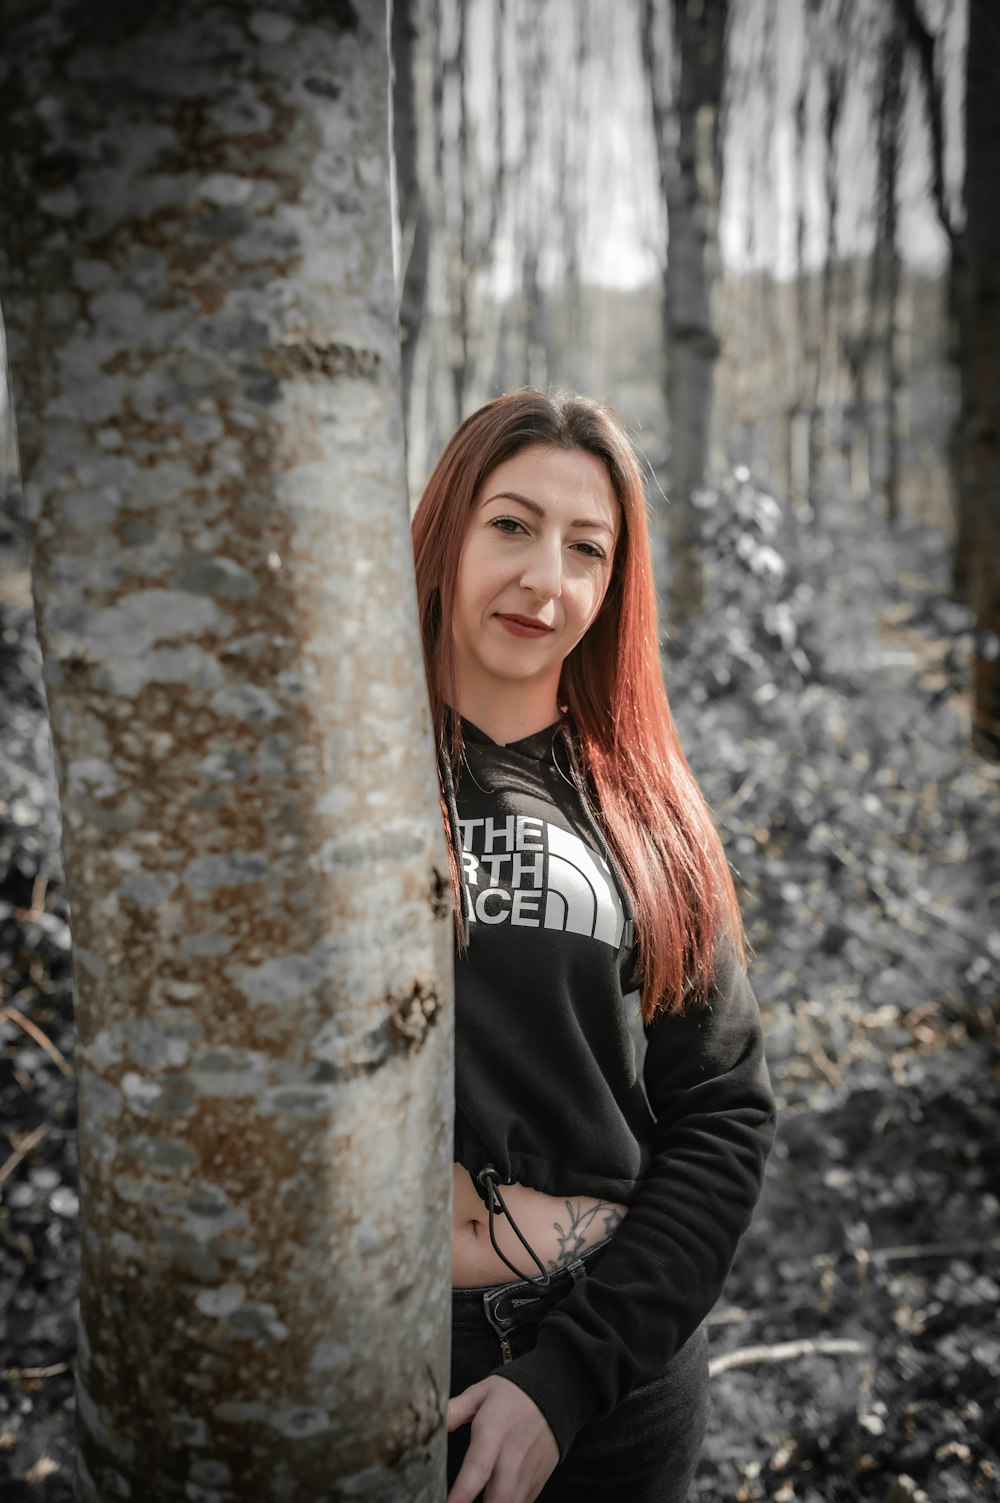 Una donna in piedi accanto a un albero in una foresta